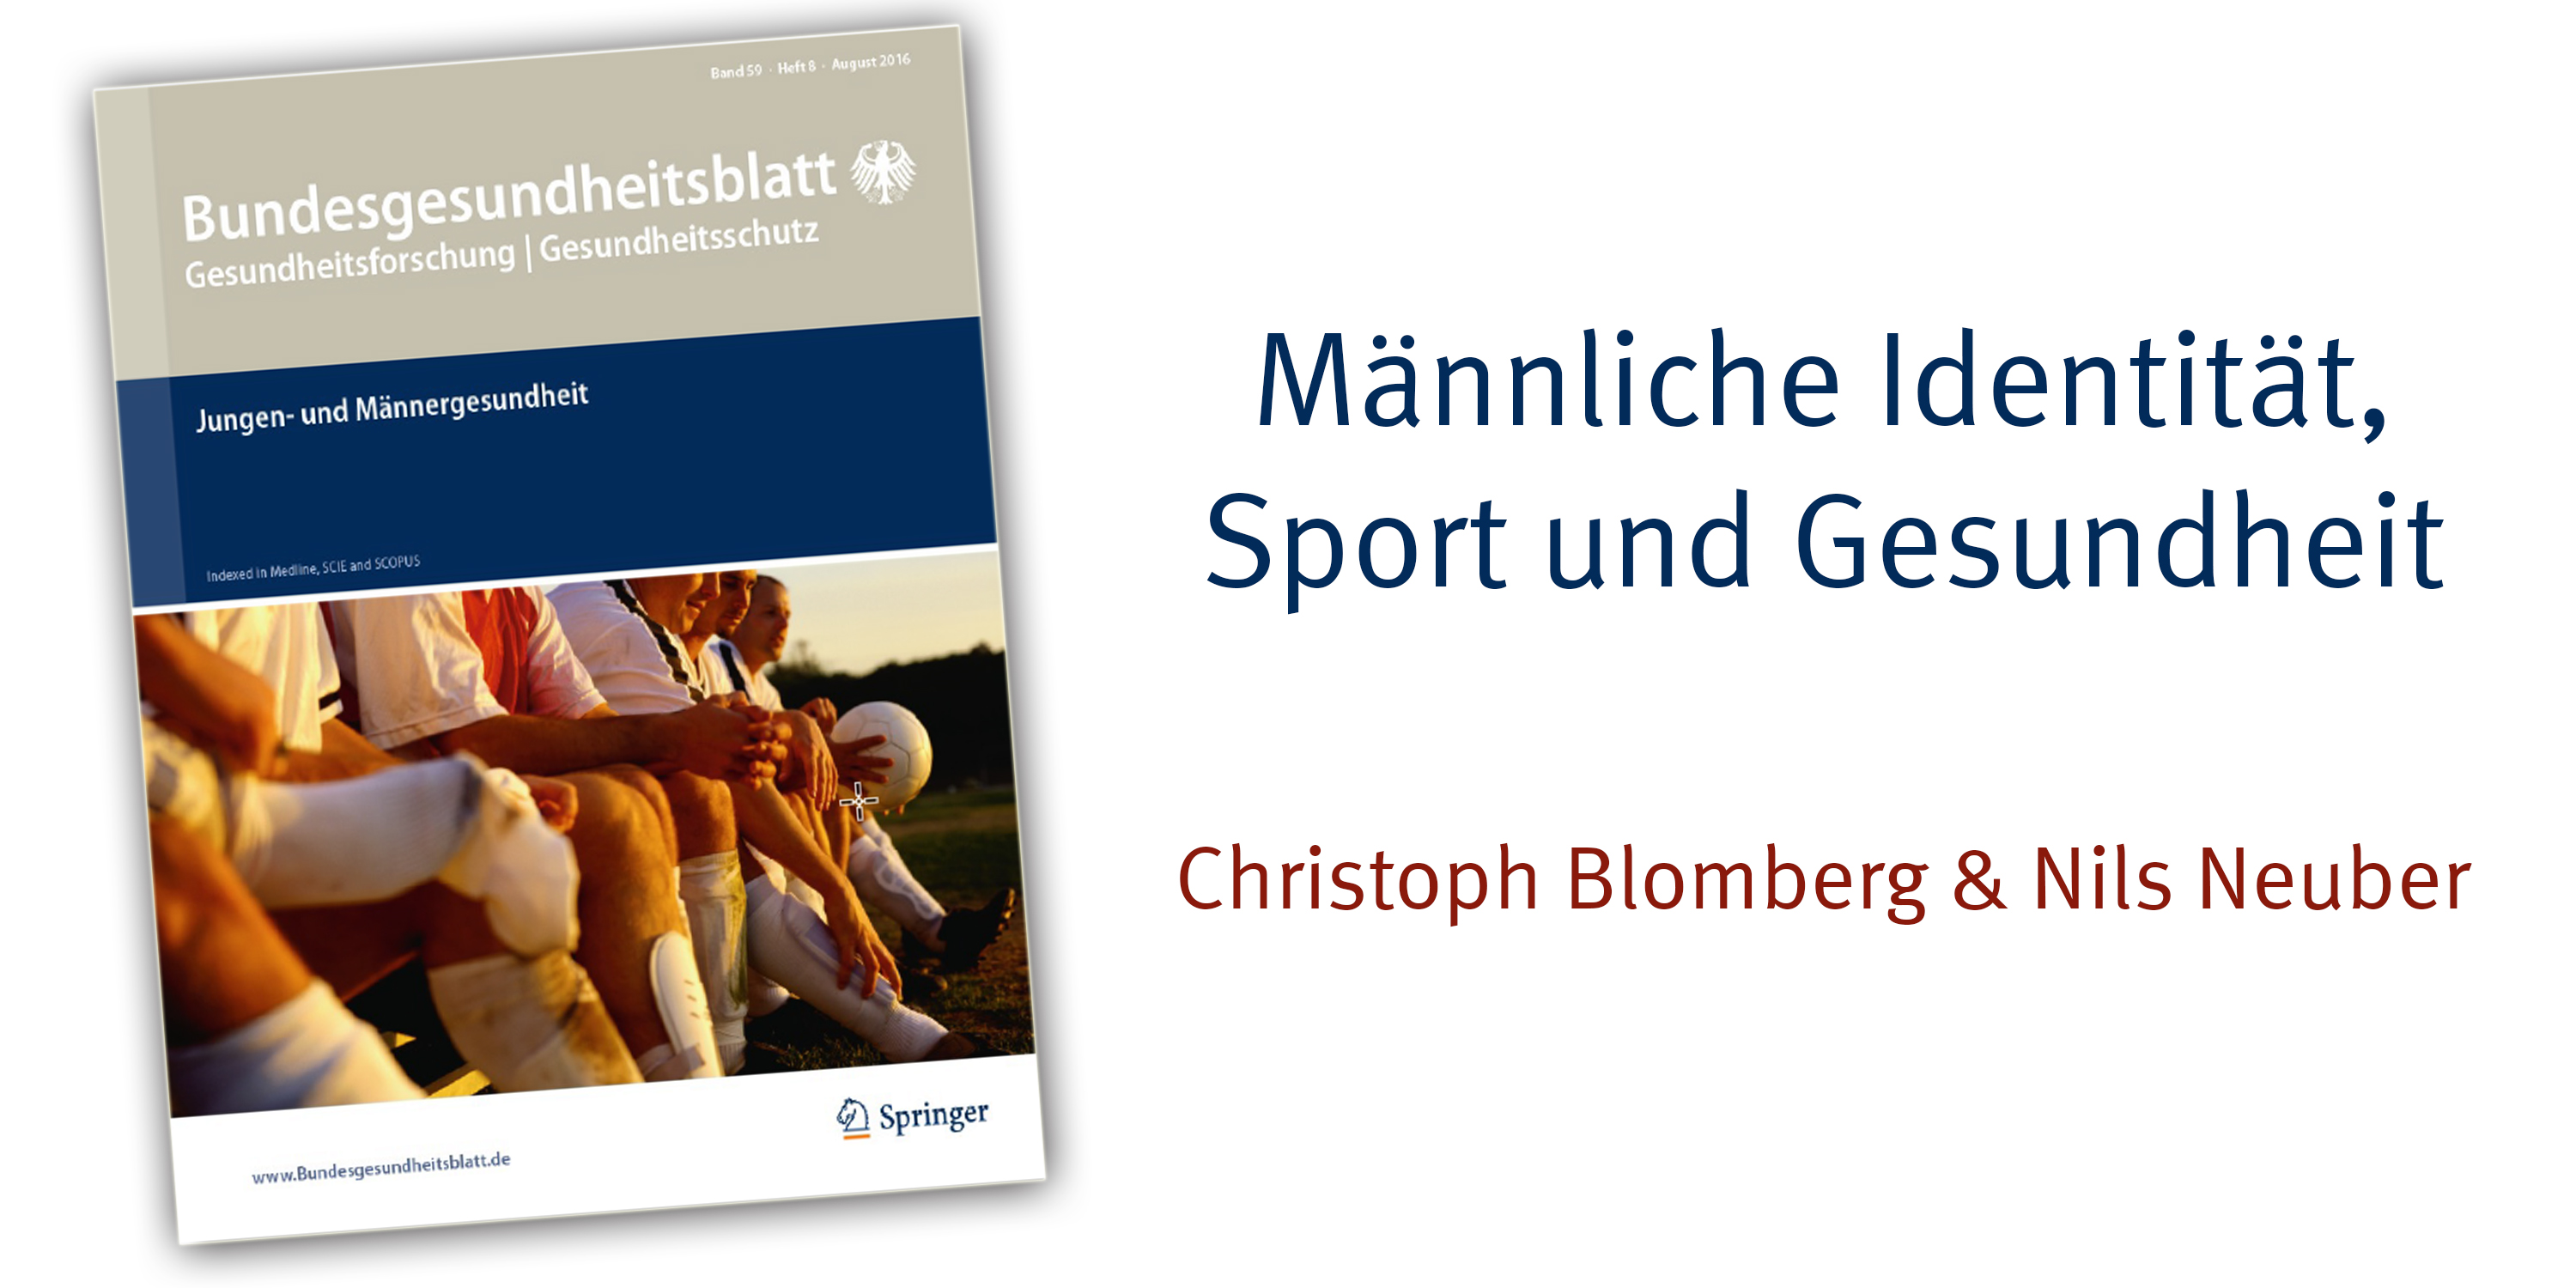 160801 Jungen Und Maennergesundheit Springerverlag Bildmontage Markus Juergens 2 1